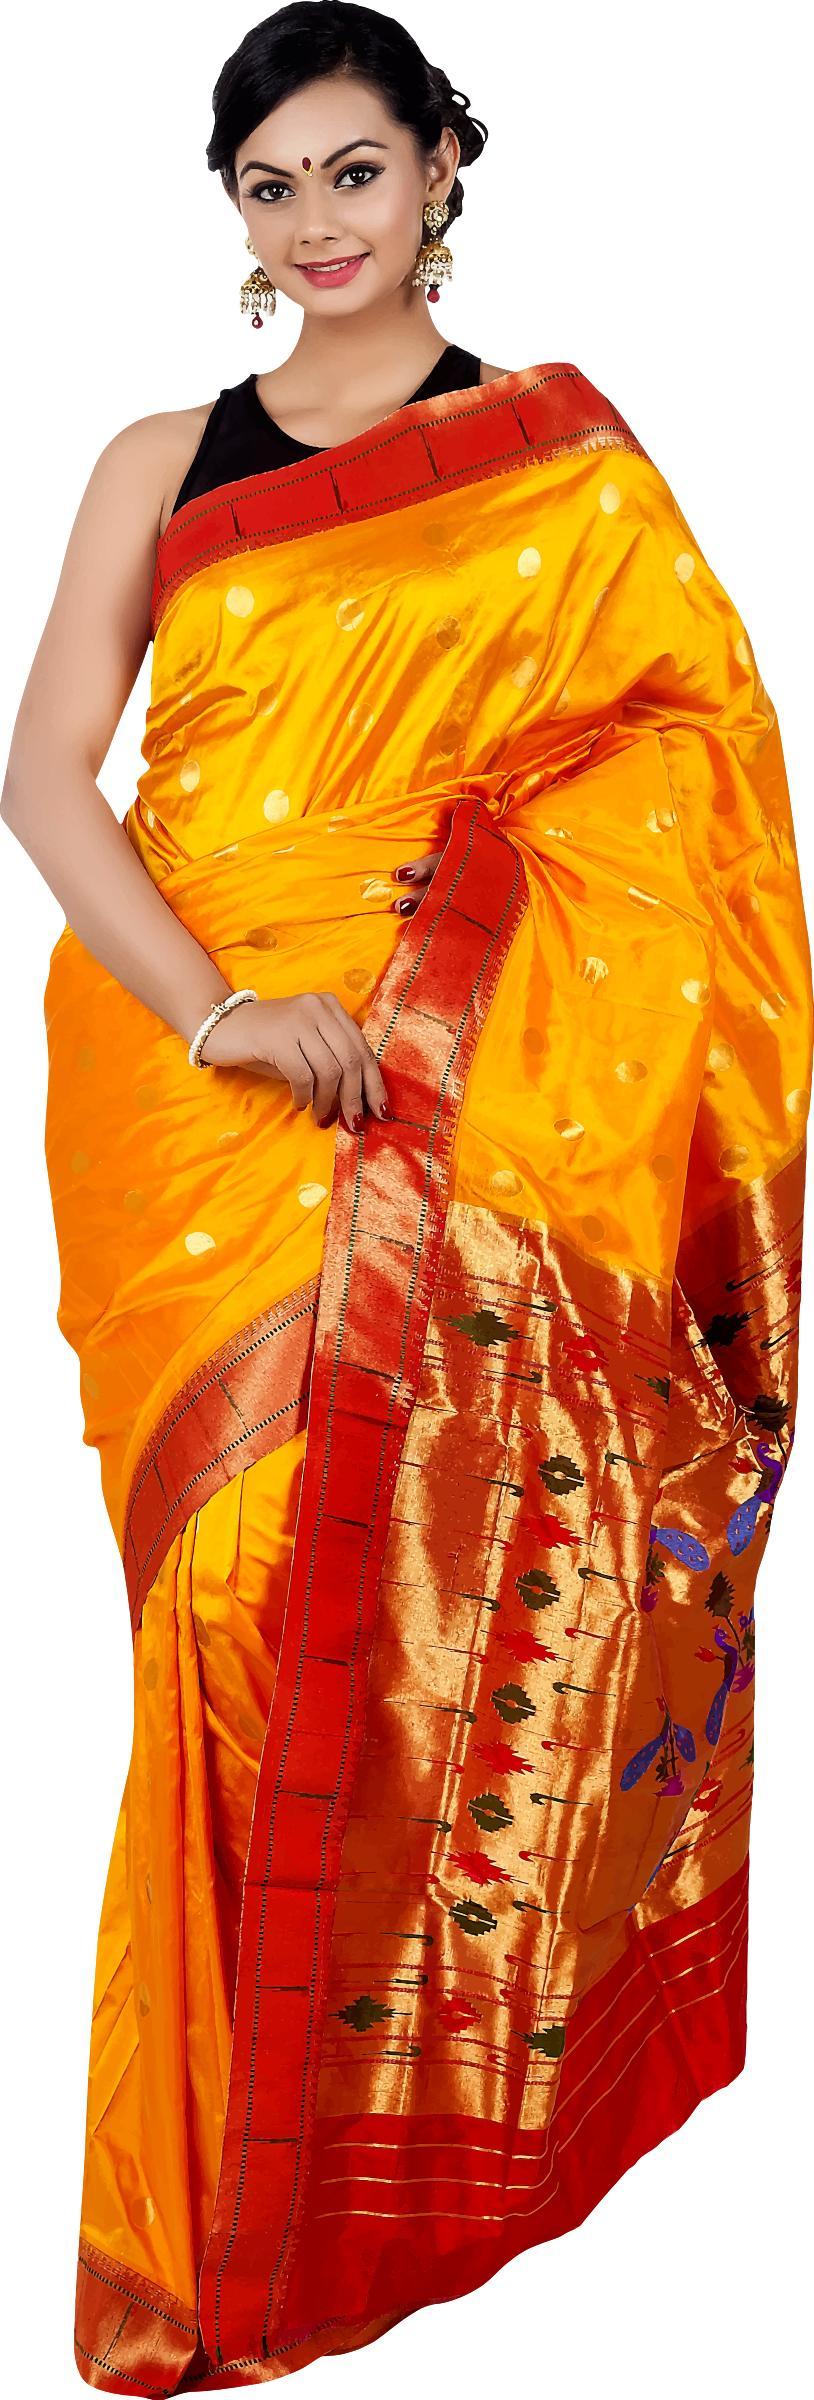 Woman in saree 5 png transparent